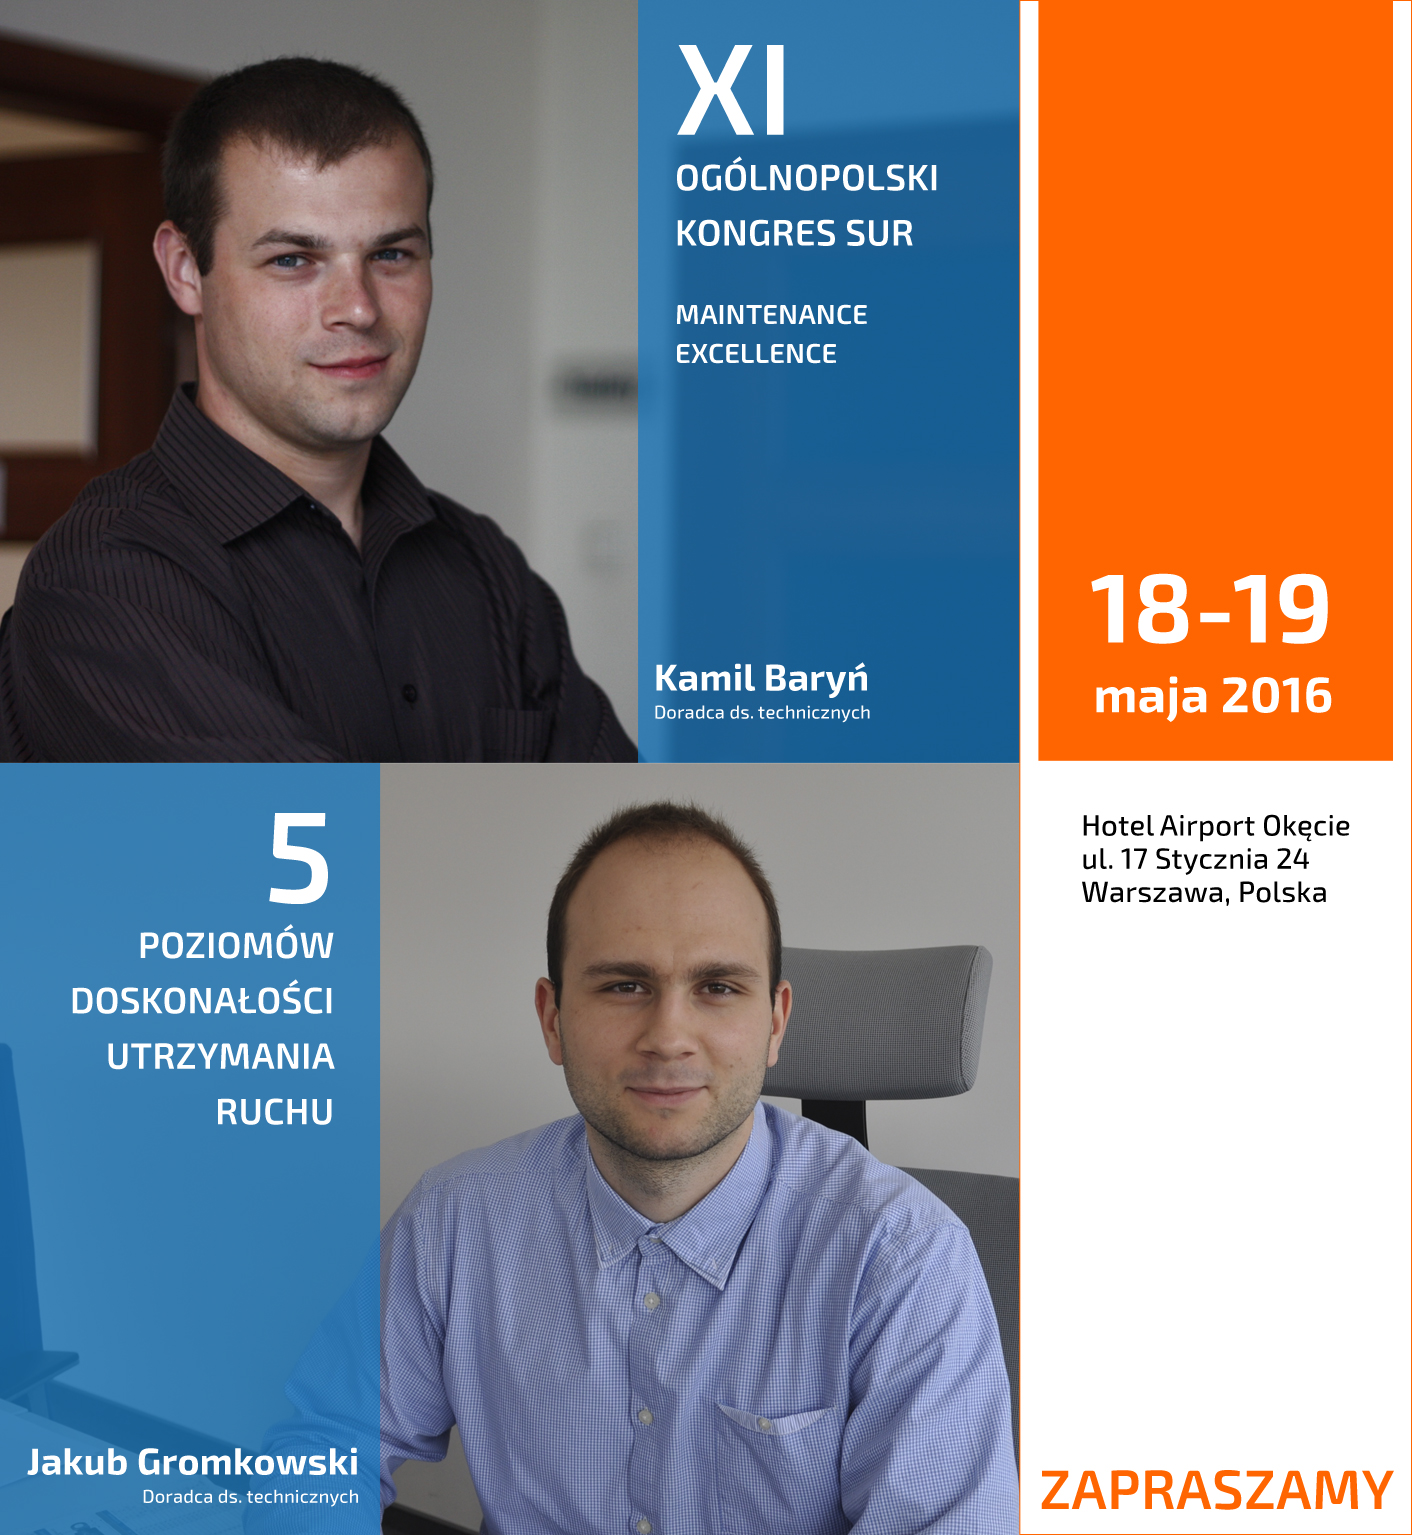 Kongres SUR w Warszawie 18-19 maja 2016